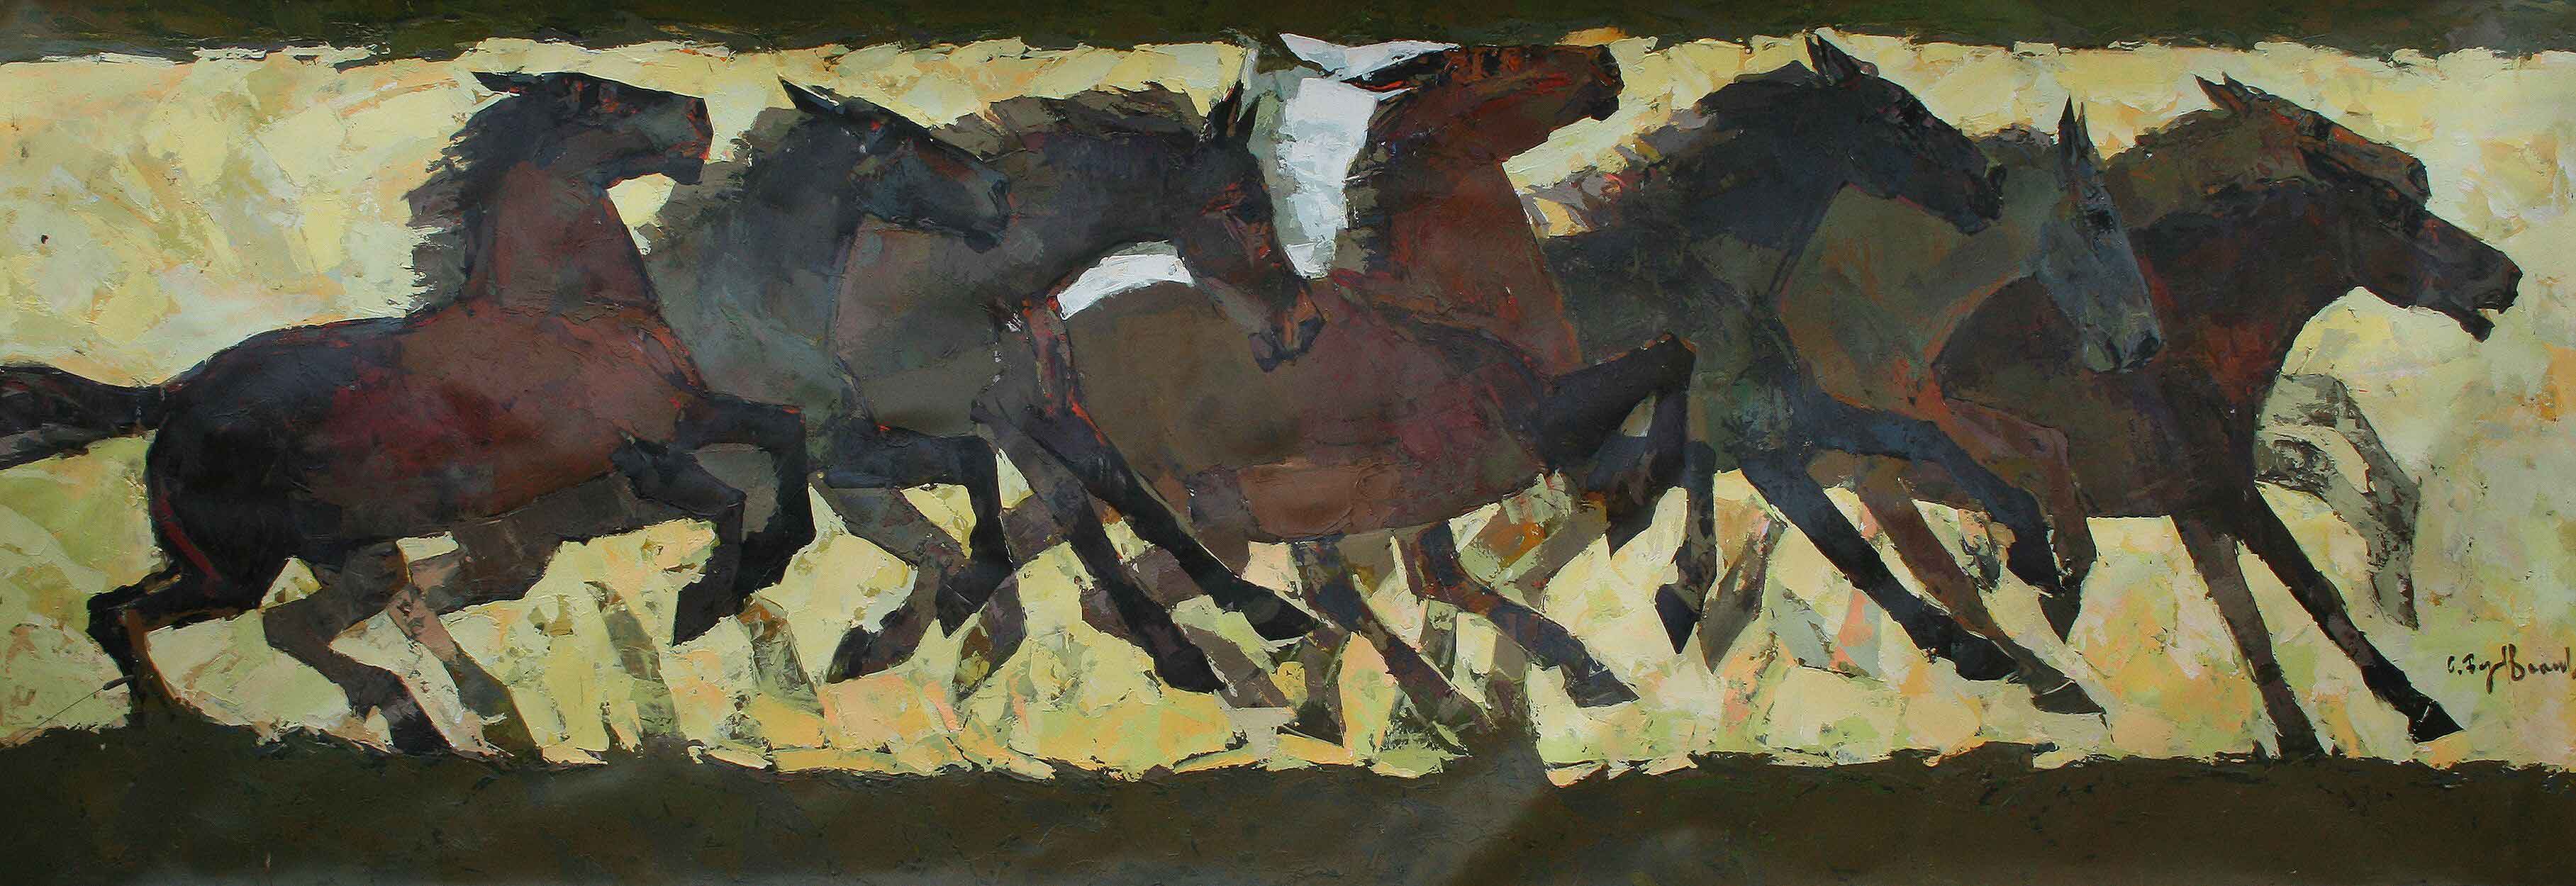 Tableau représentant une horde de chevaux en diverses positions